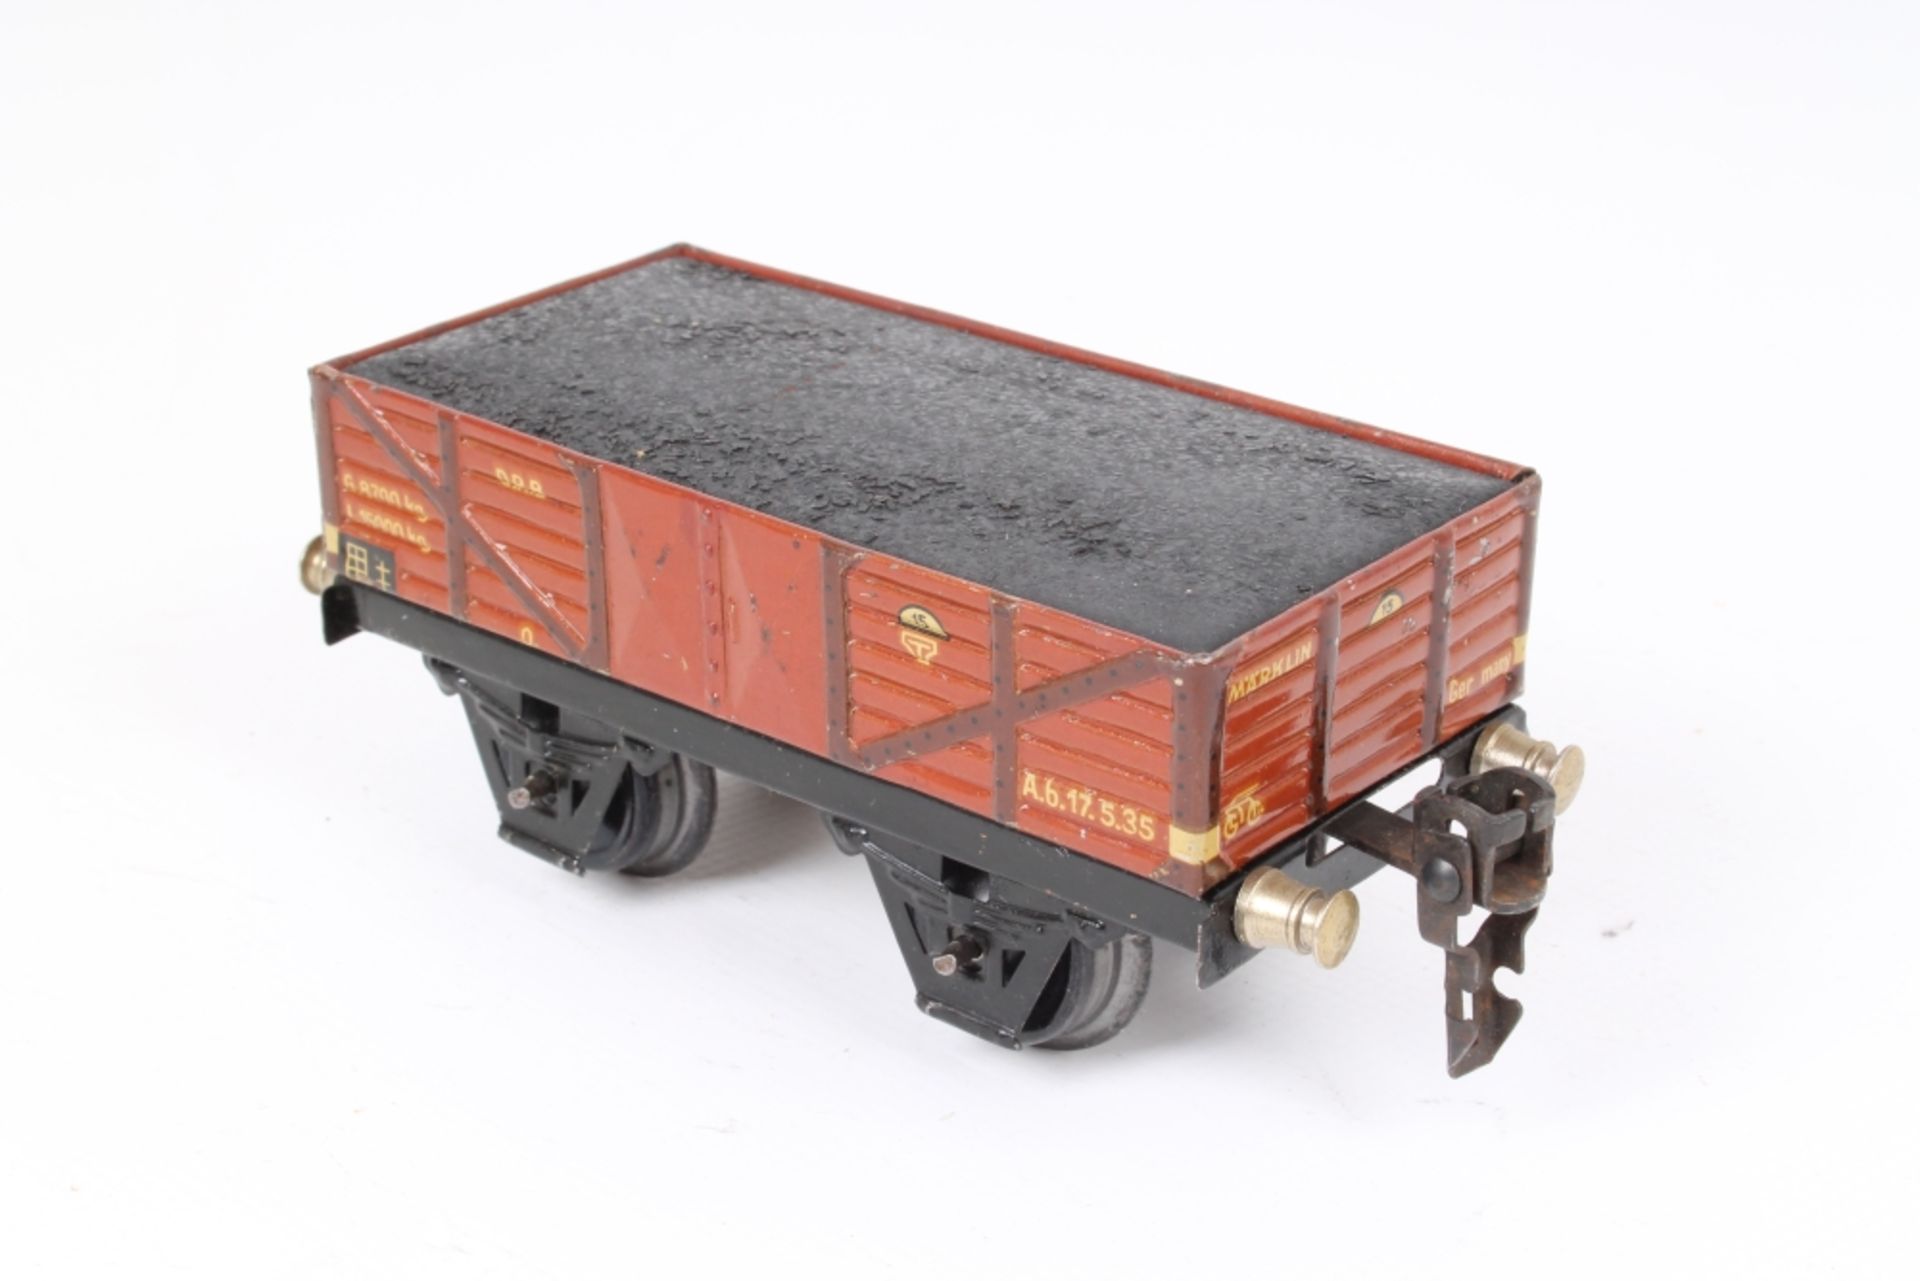 Märklin offener Güterwagen mit Kohleeinsatz, 16620 K, Einsatz nahezu leer, guter Zustand